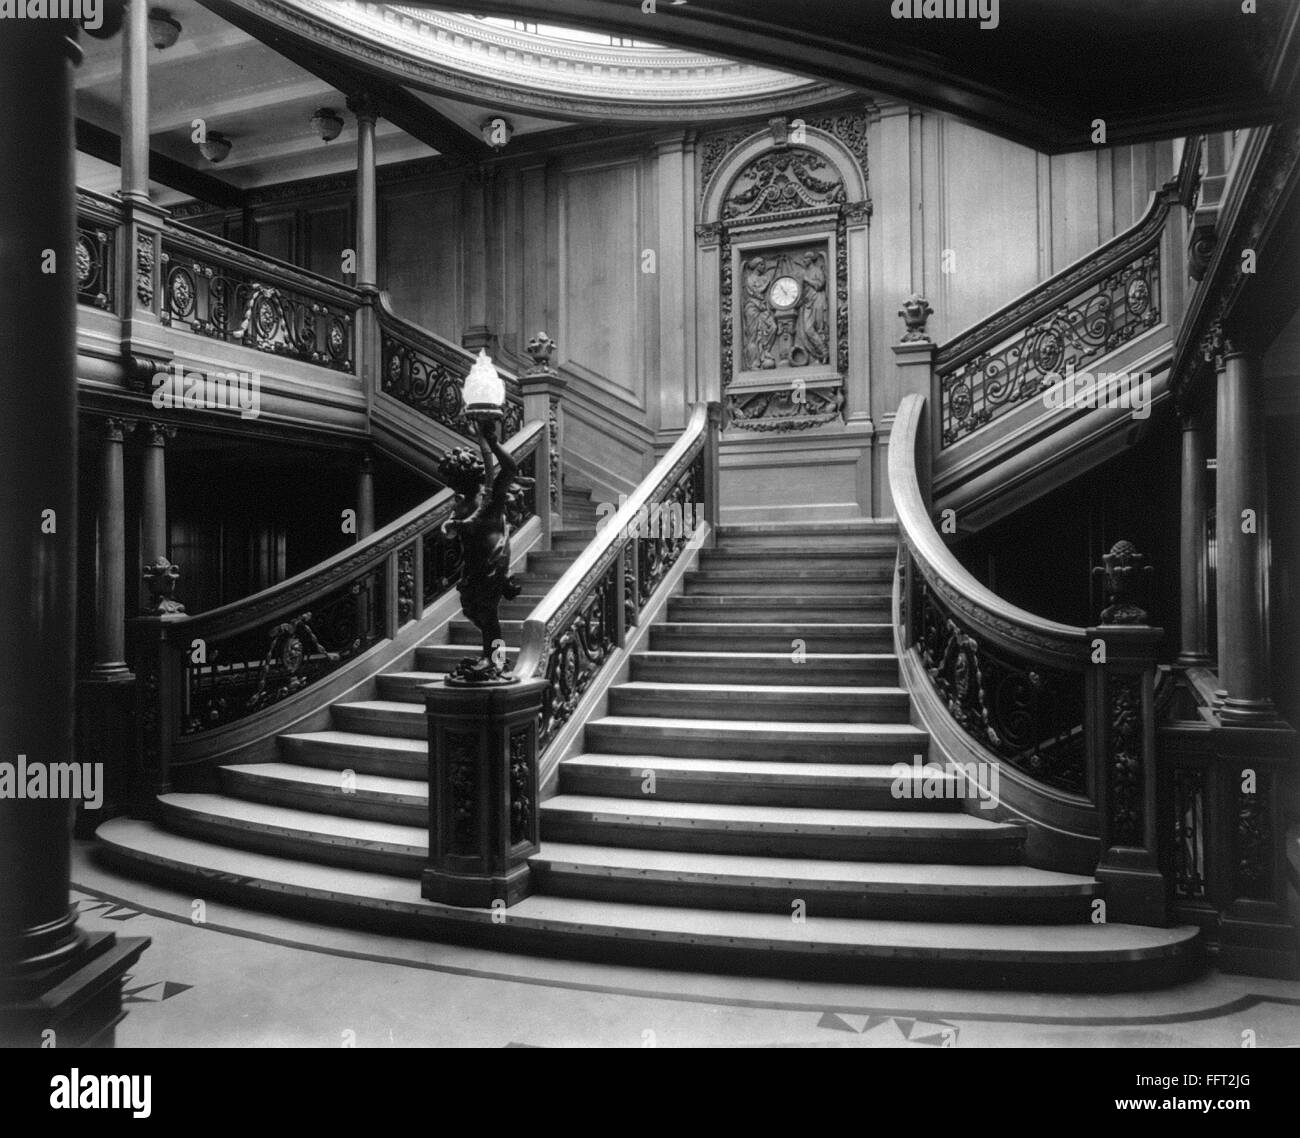 La Steamship: ESCALERA, c1911. /Nel interior de la gran escalera, segundo desembarco del 'RMS Olympic." Fotografía, c1911. Foto de stock